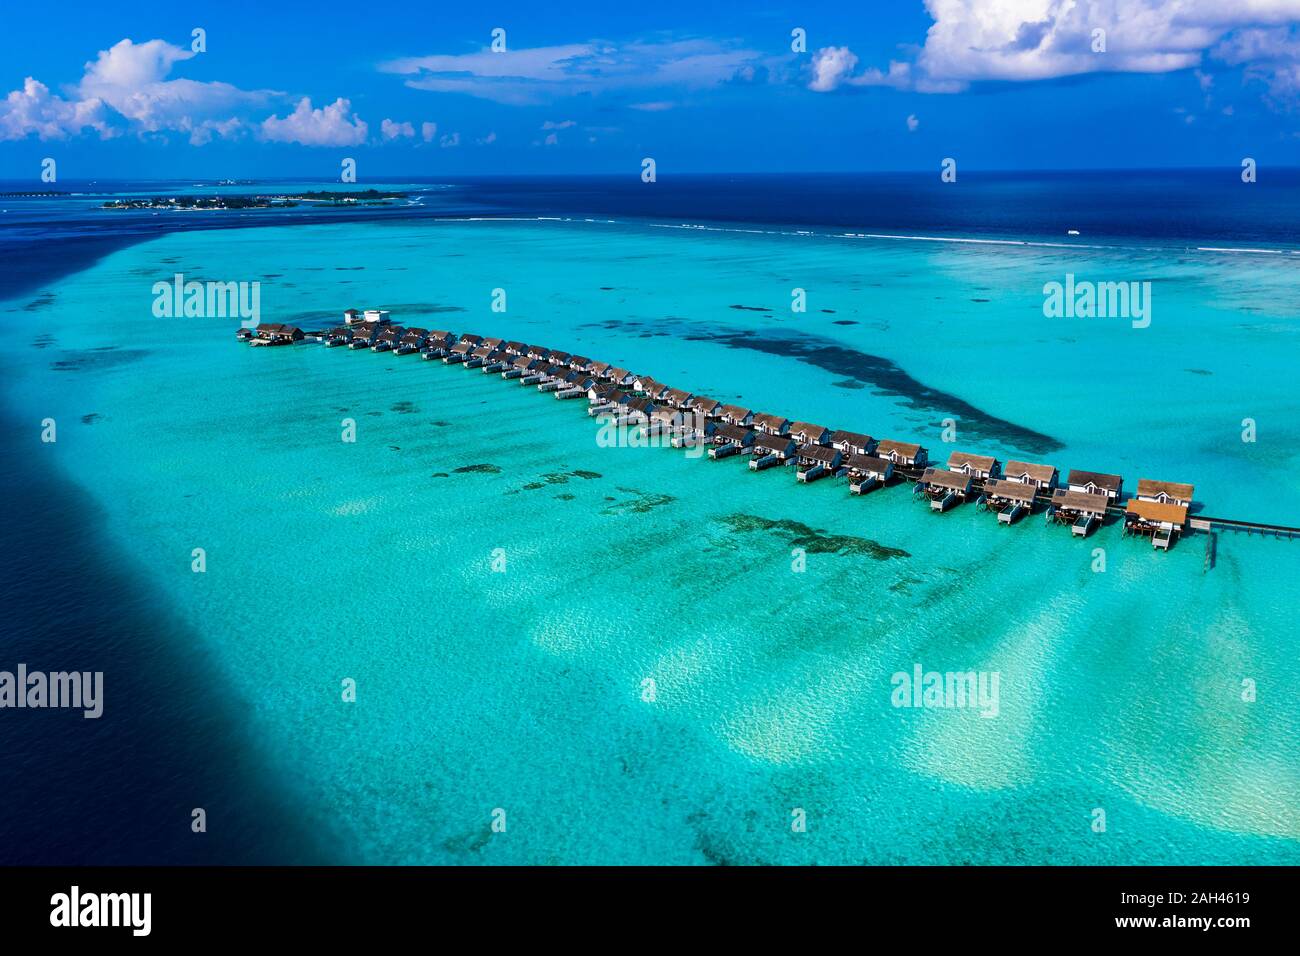 Maldive, South Male Atoll, Kaafu Atoll, vista aerea di bungalow sul mare Foto Stock